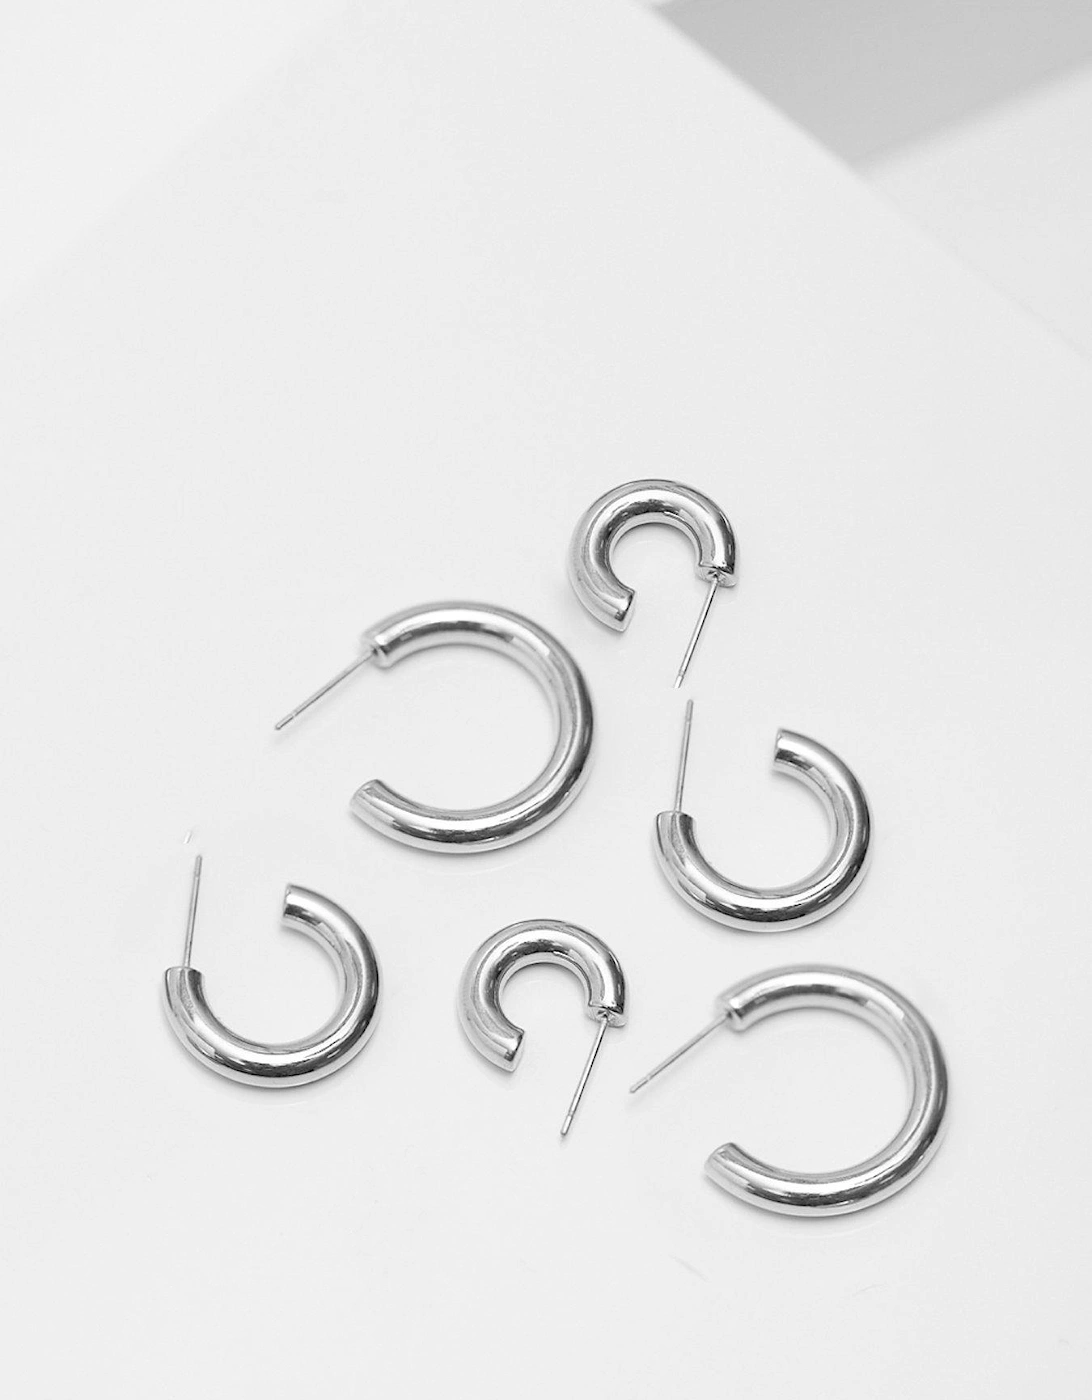 Silver Stainless Steel Polished Simple Hoop Earrings - Pack of 3, 2 of 1